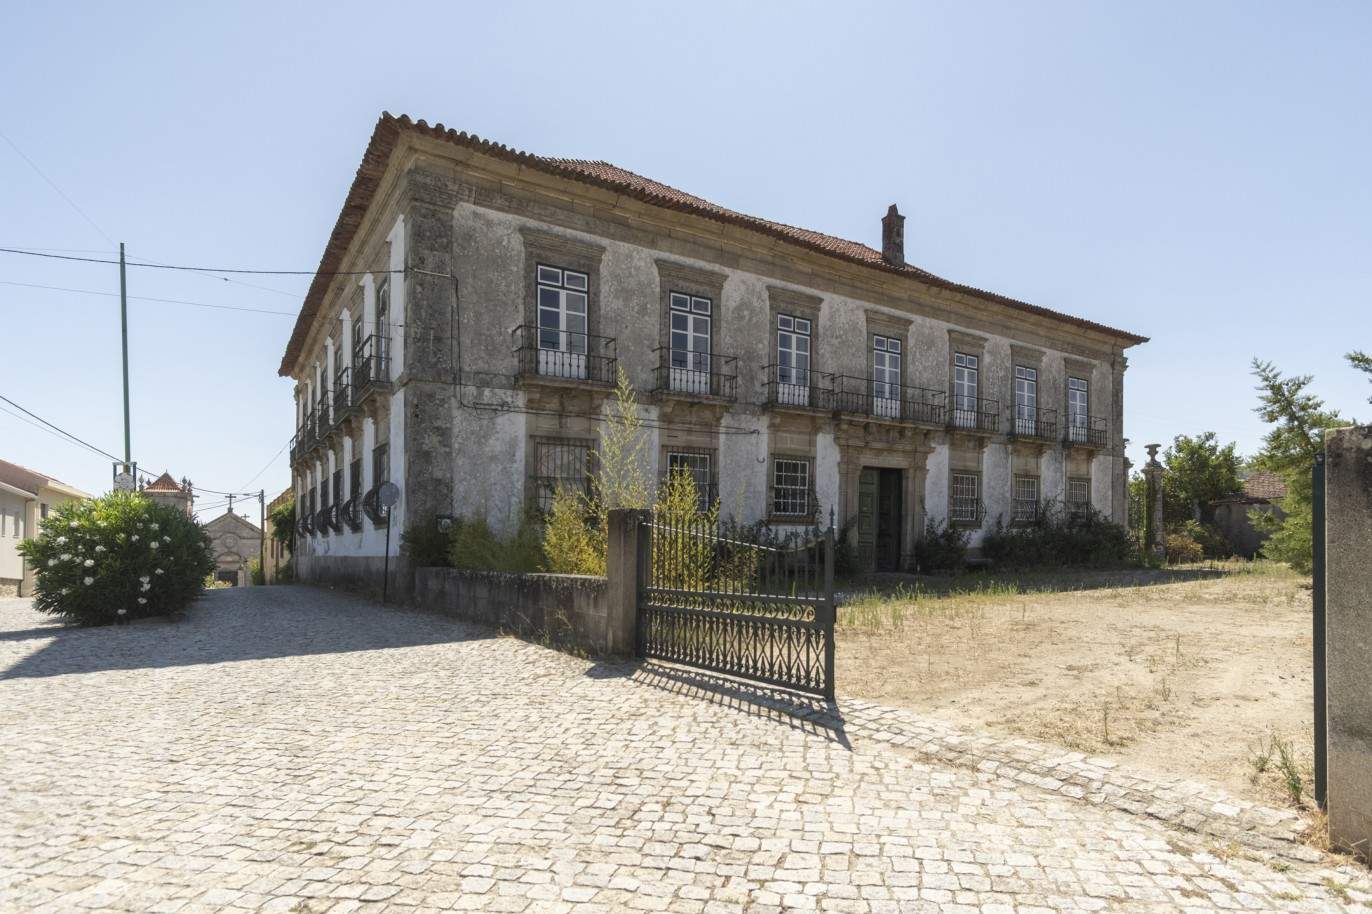 Venta: Palacete para restaurar con jardines y fuente centenaria, en Lamego, región vinícola del Alto Duero, norte de Portugal_207357